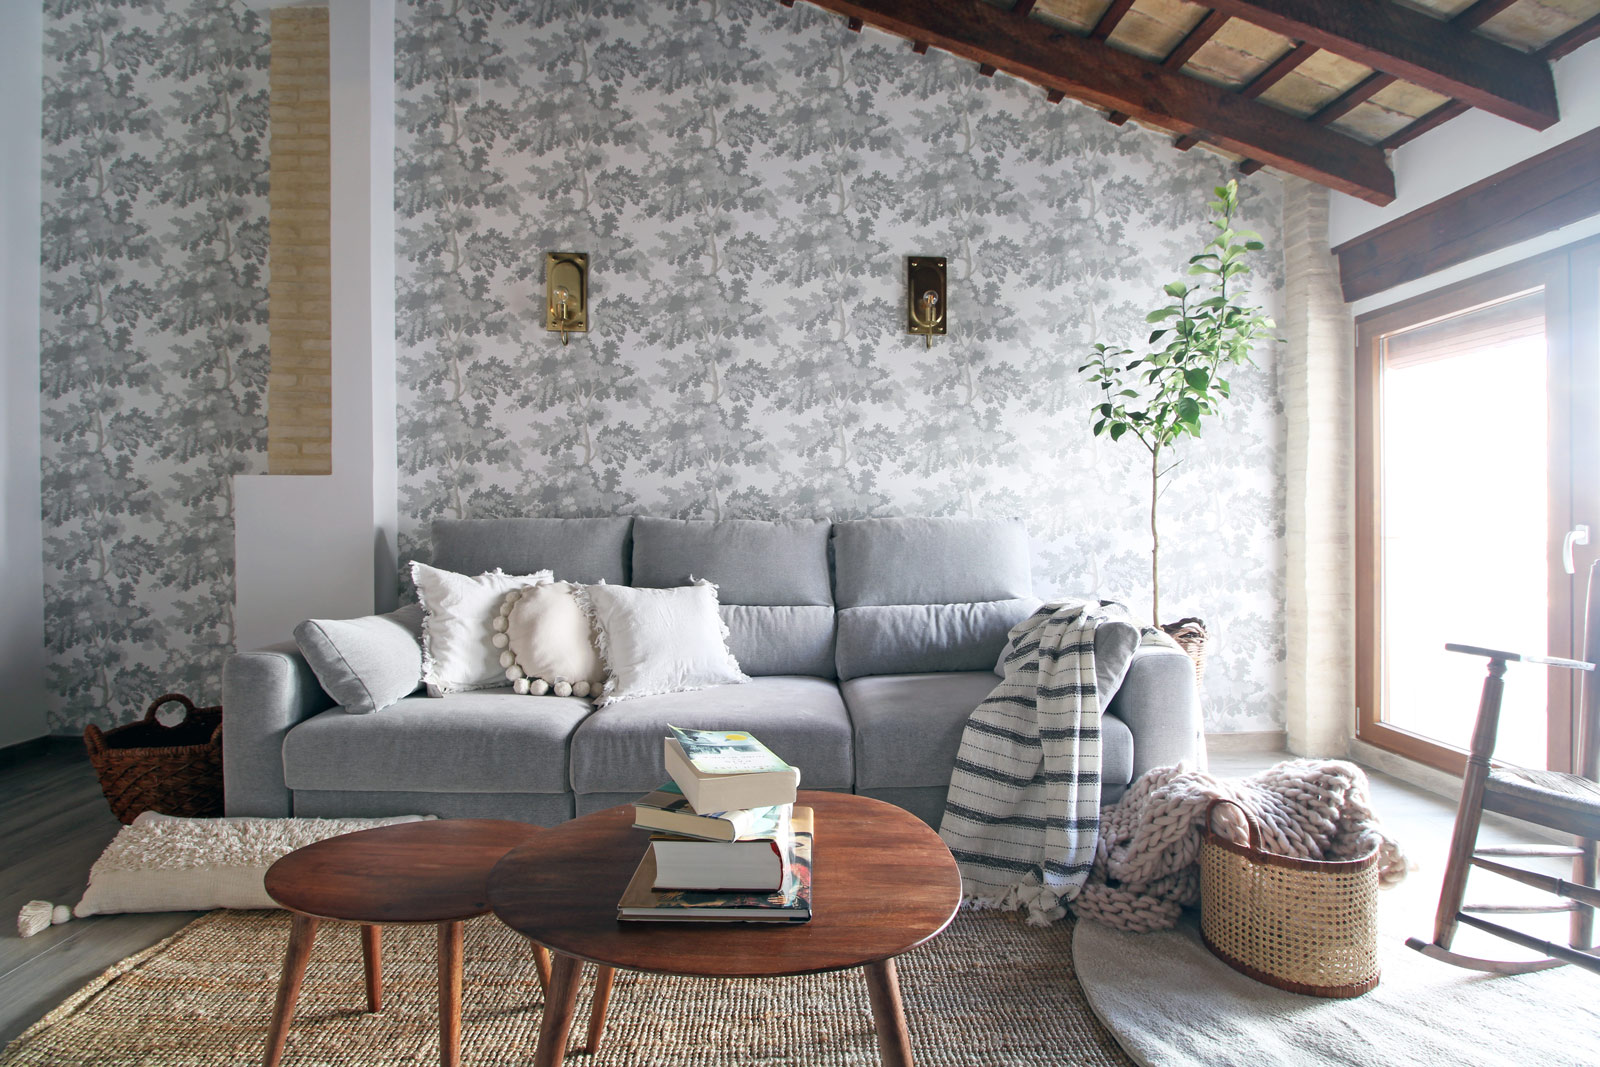 Salón luminoso con papel pintado, sofá gris y techo con vigas inclinado